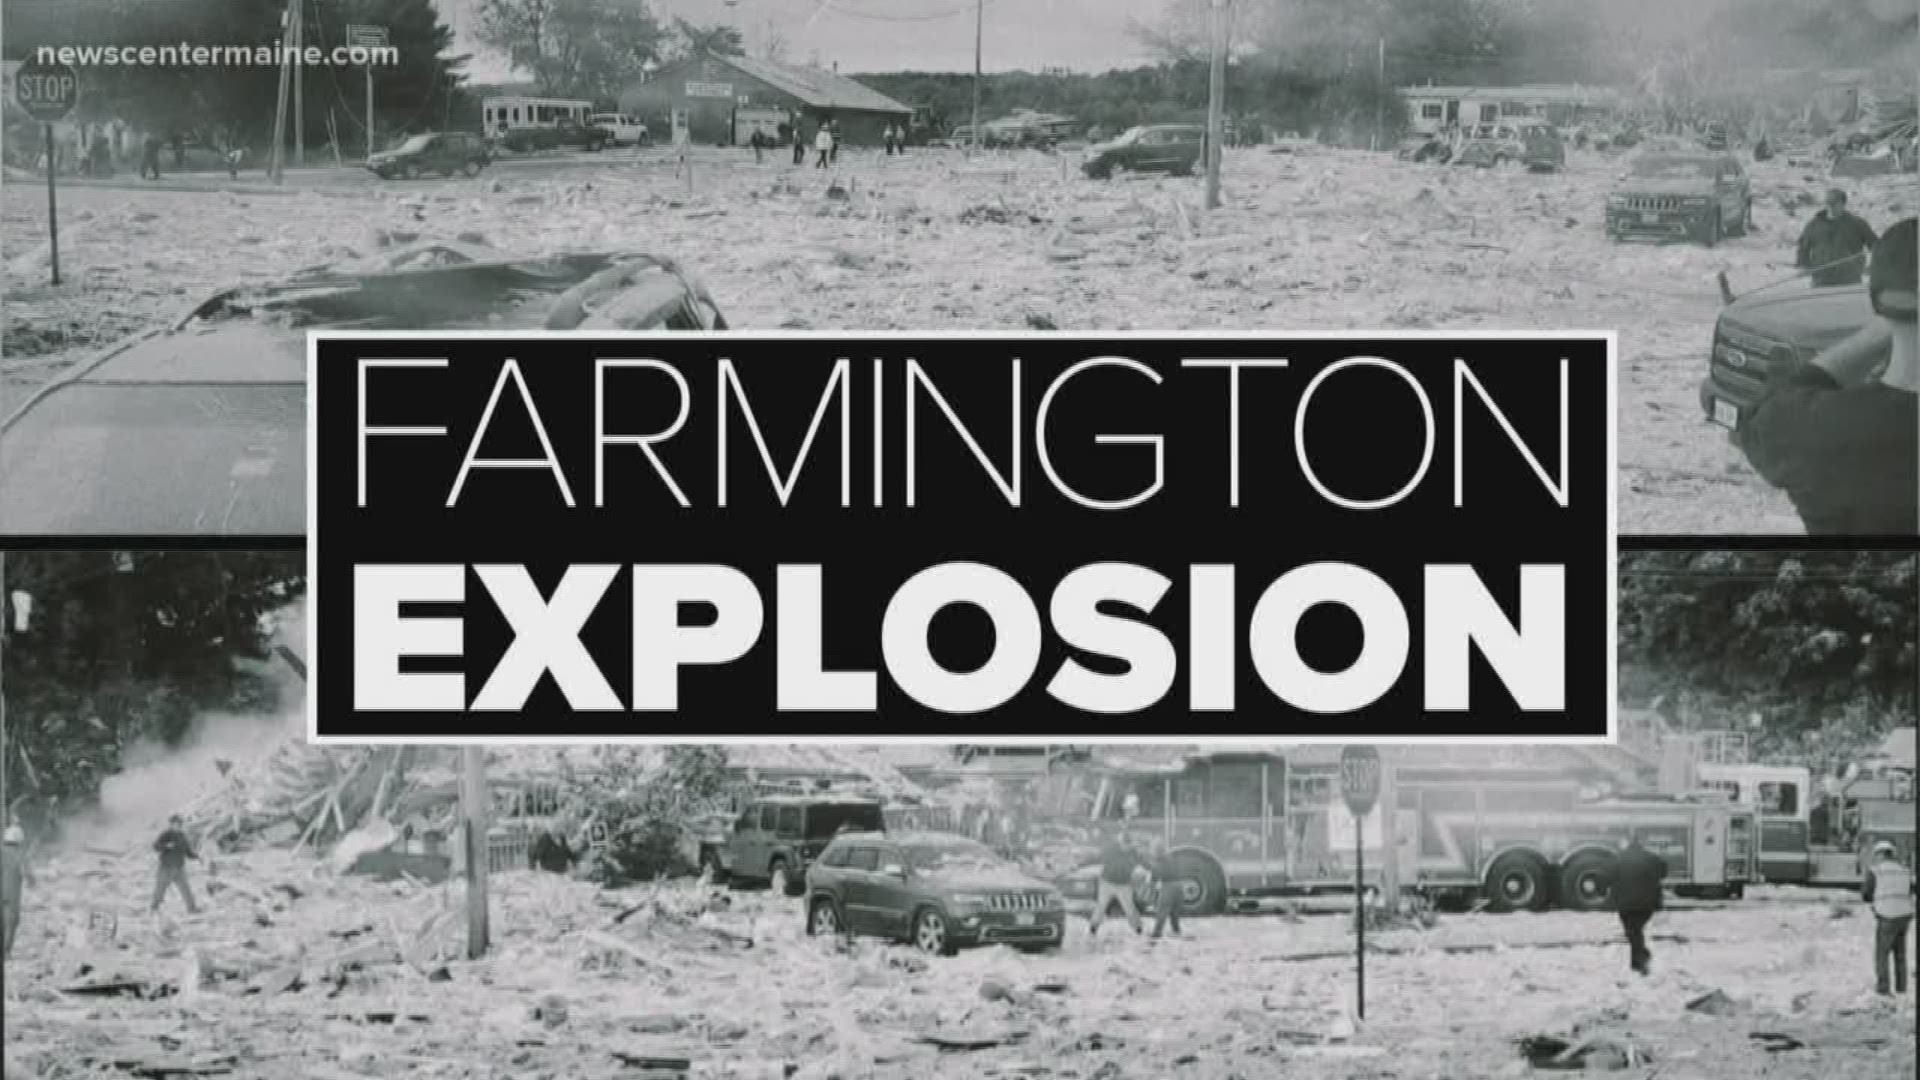 Farmington explosion kills fire captain, injures 7 others, destroys facility